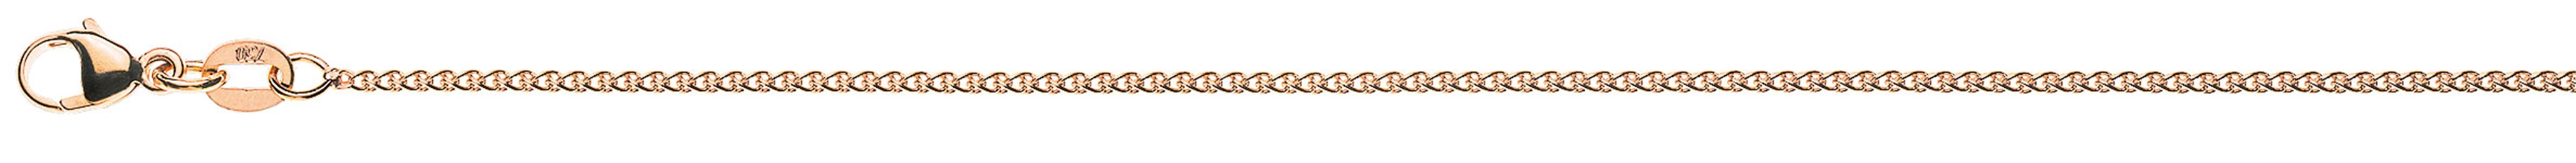 AURONOS Prestige Necklace rose gold 18K cable chain 60cm 1.2mm